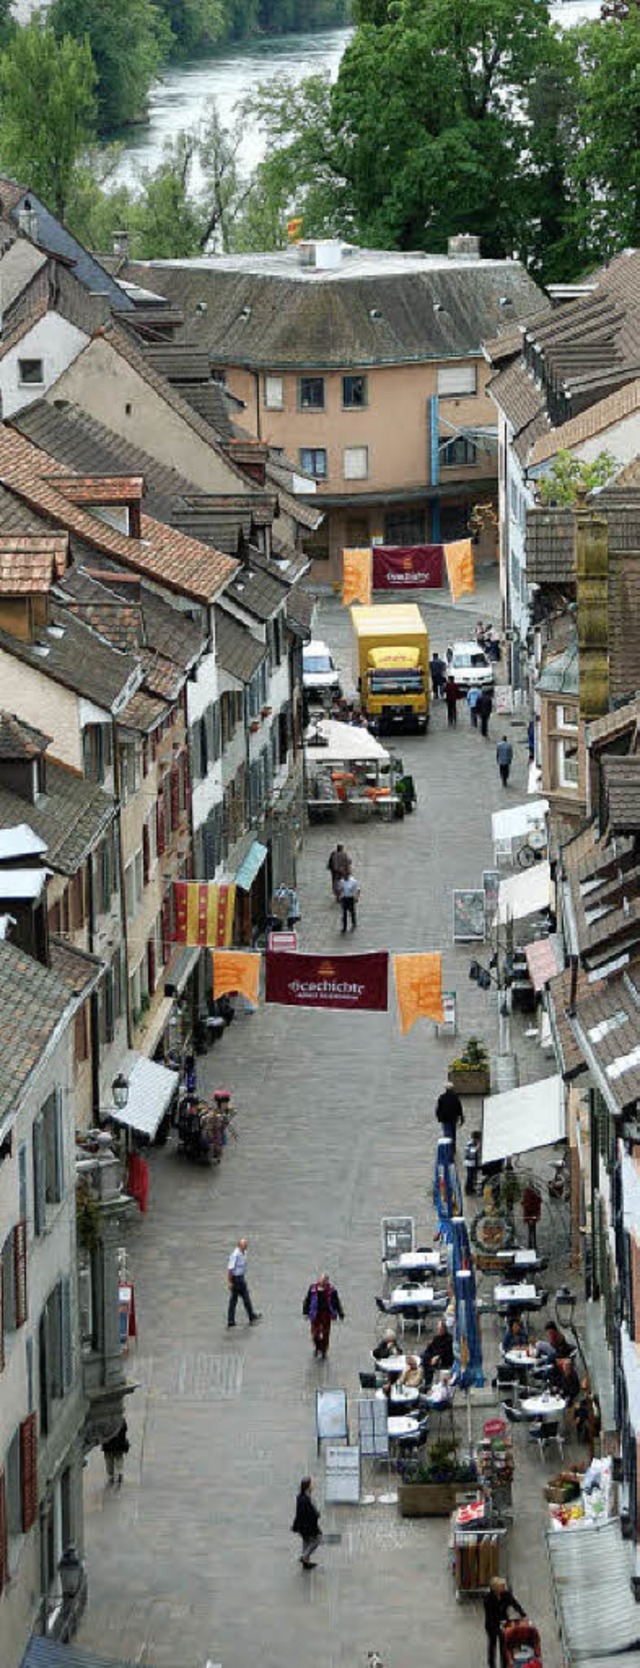 Die Innenstadt beleben soll der Wochenmarkt im schweizerischen Rheinfelden.   | Foto: Ralf Staub